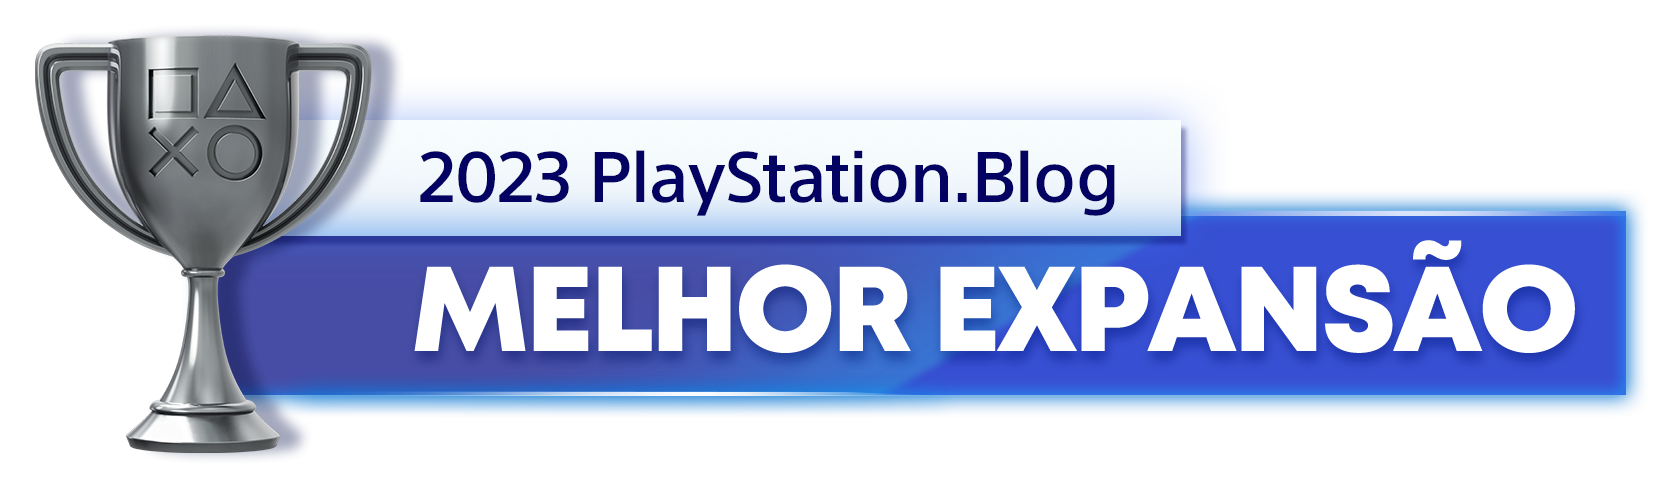  "Troféu de Prata para o vencedor da categoria Melhor Expansão de 2023 do PlayStation Blog"